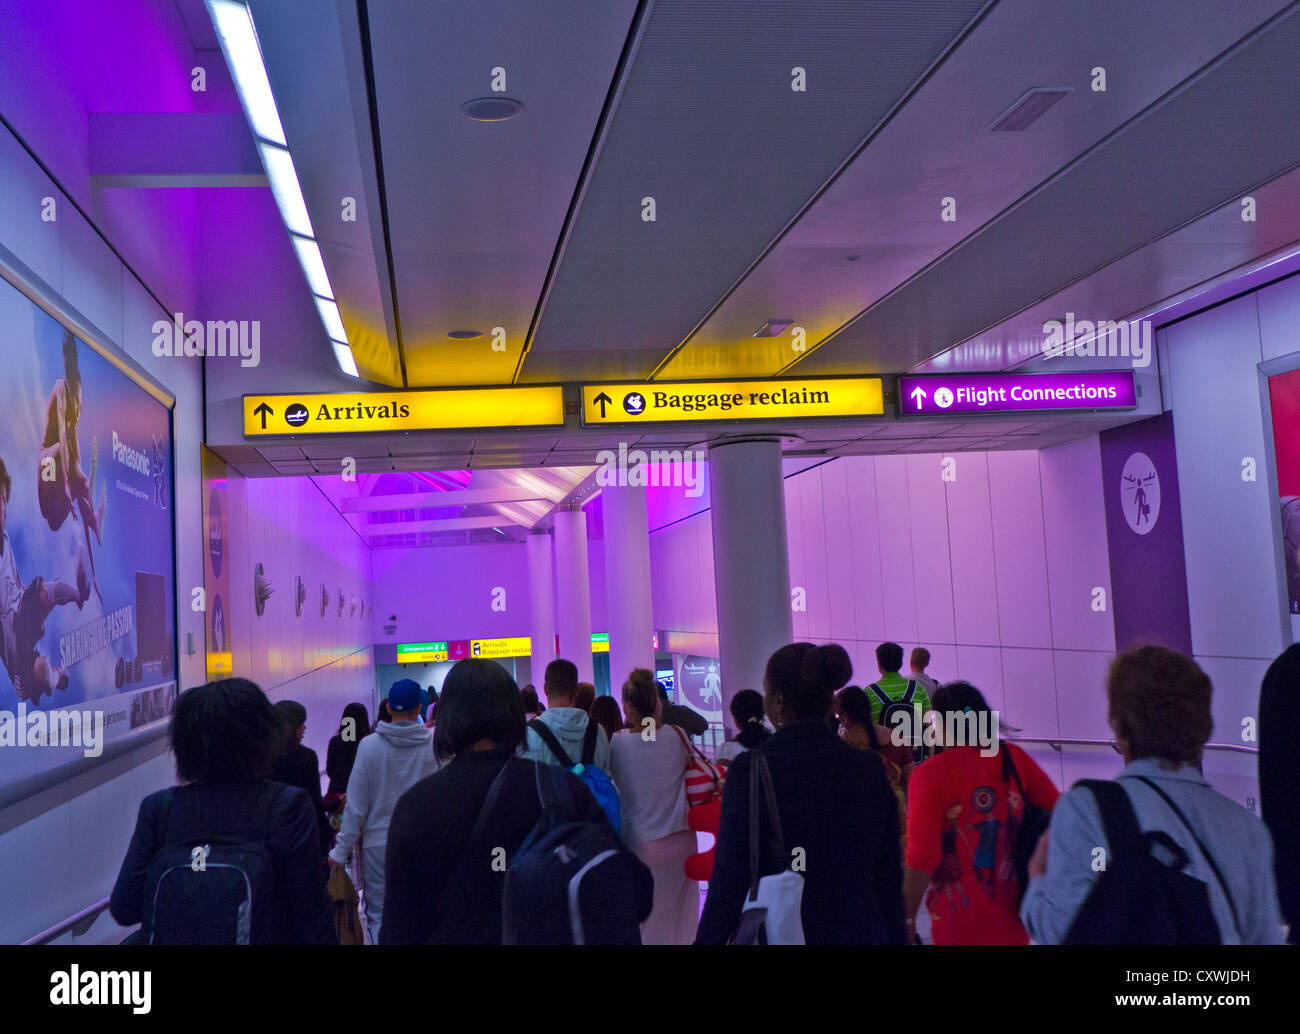 ARRIVI passeggeri Airline che arrivano al passaggio pedonale dell'aeroporto di Heathrow illuminato colori calmanti per gli arrivi e le aree di ritiro bagagli Foto Stock